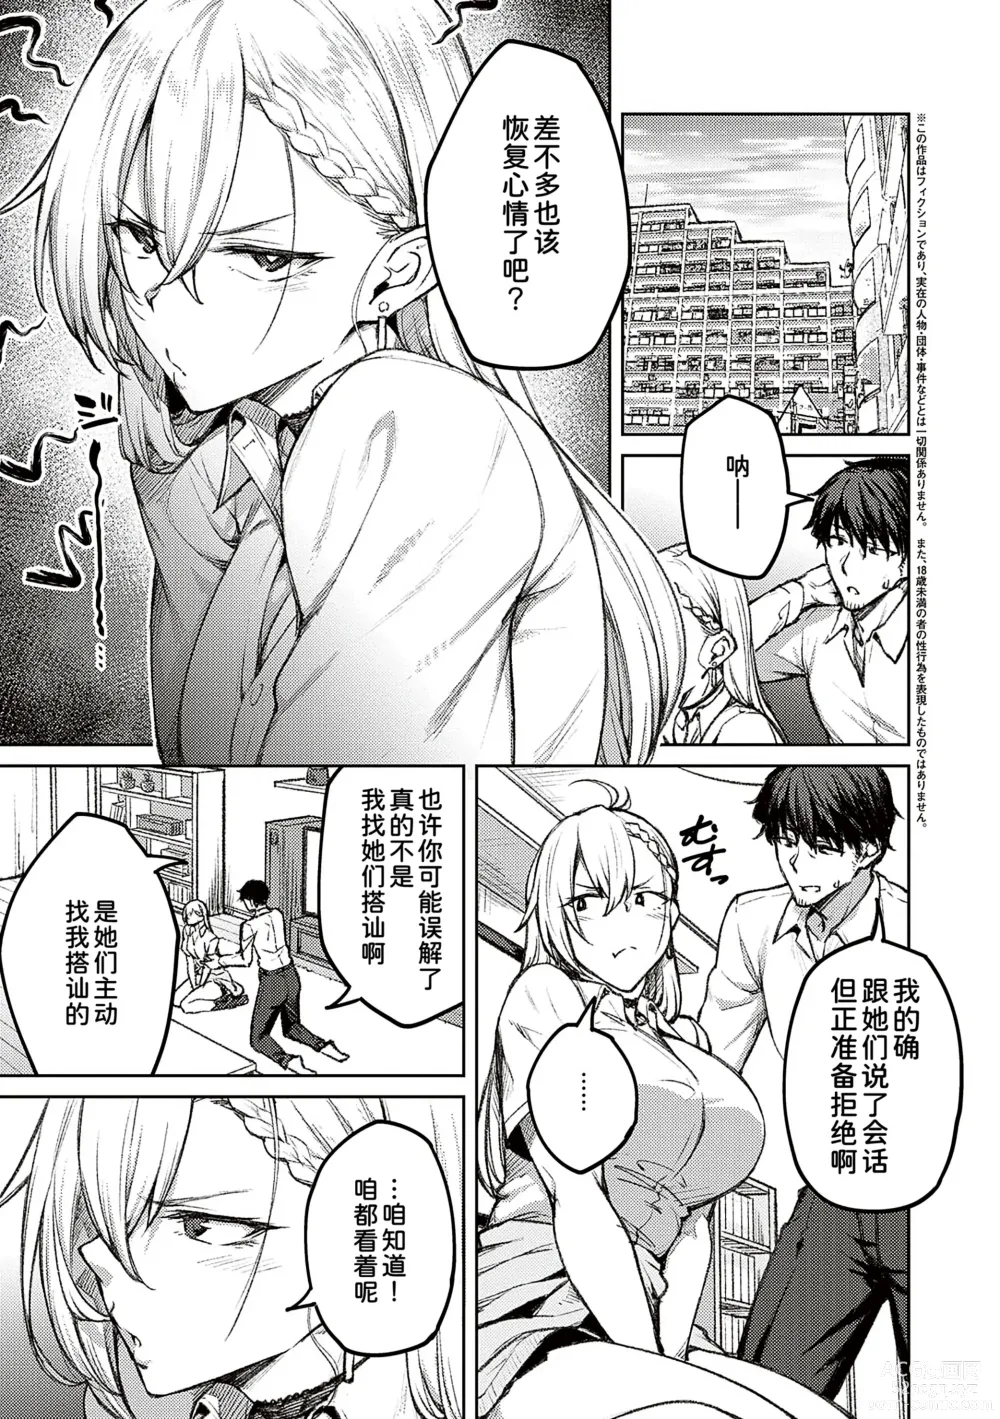 Page 7 of manga Honey Temptation